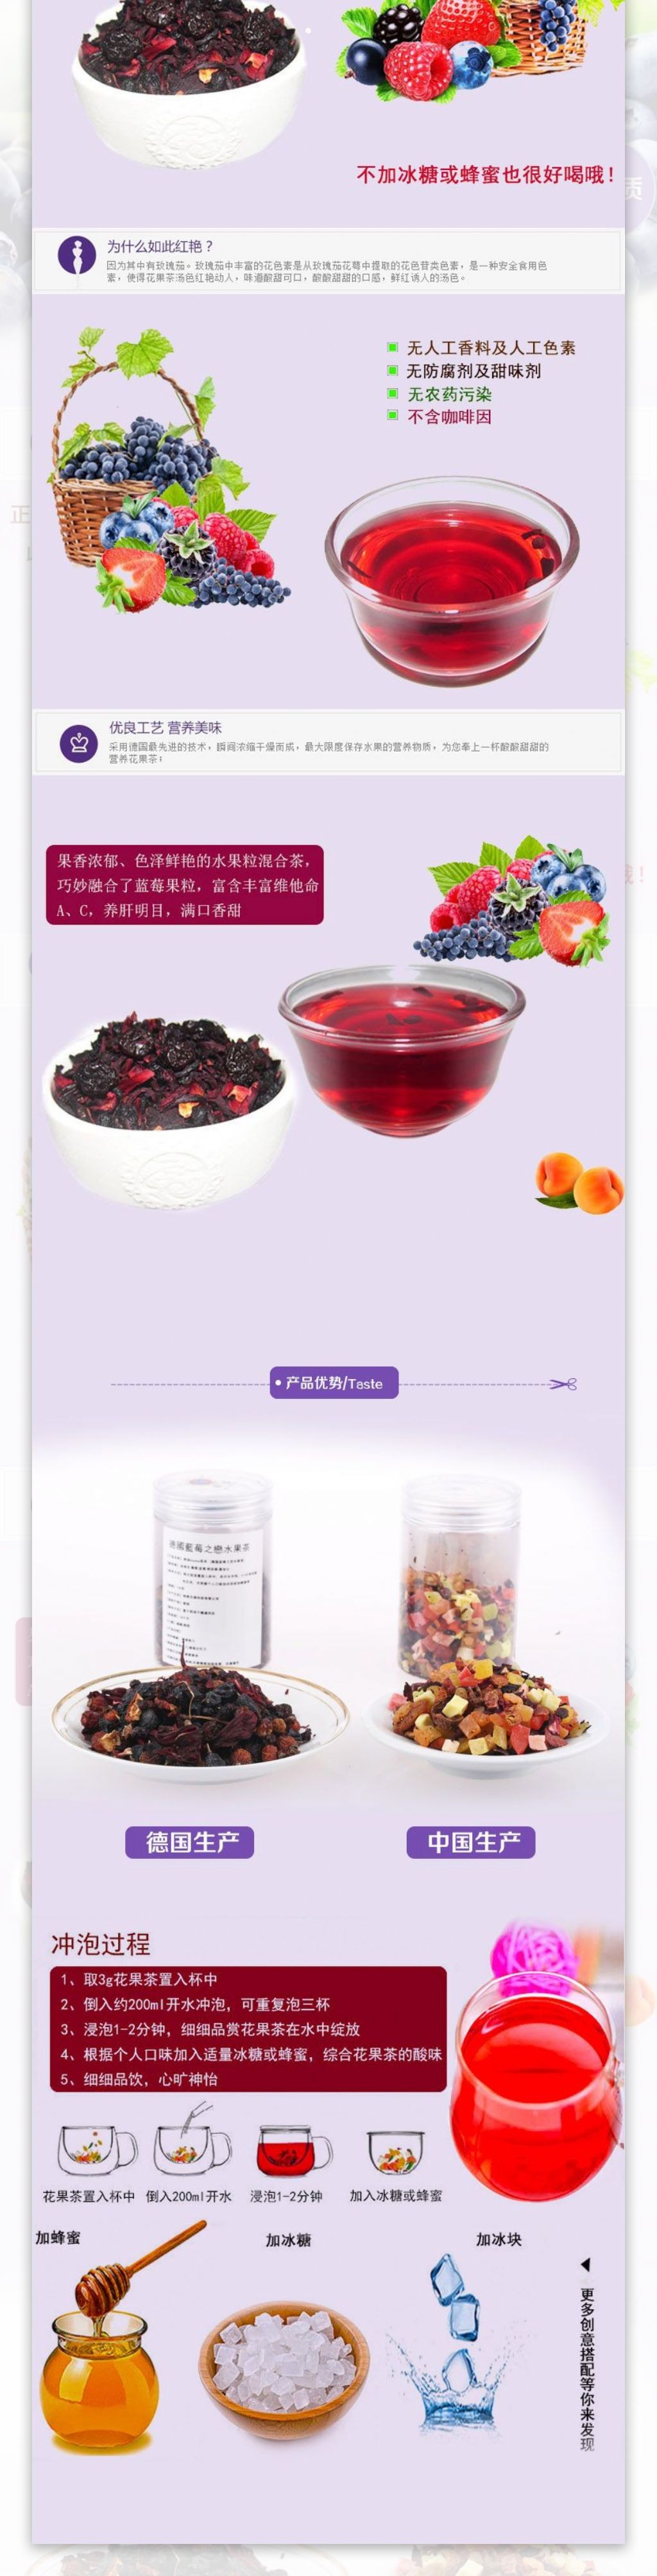 蓝莓水果茶详情页